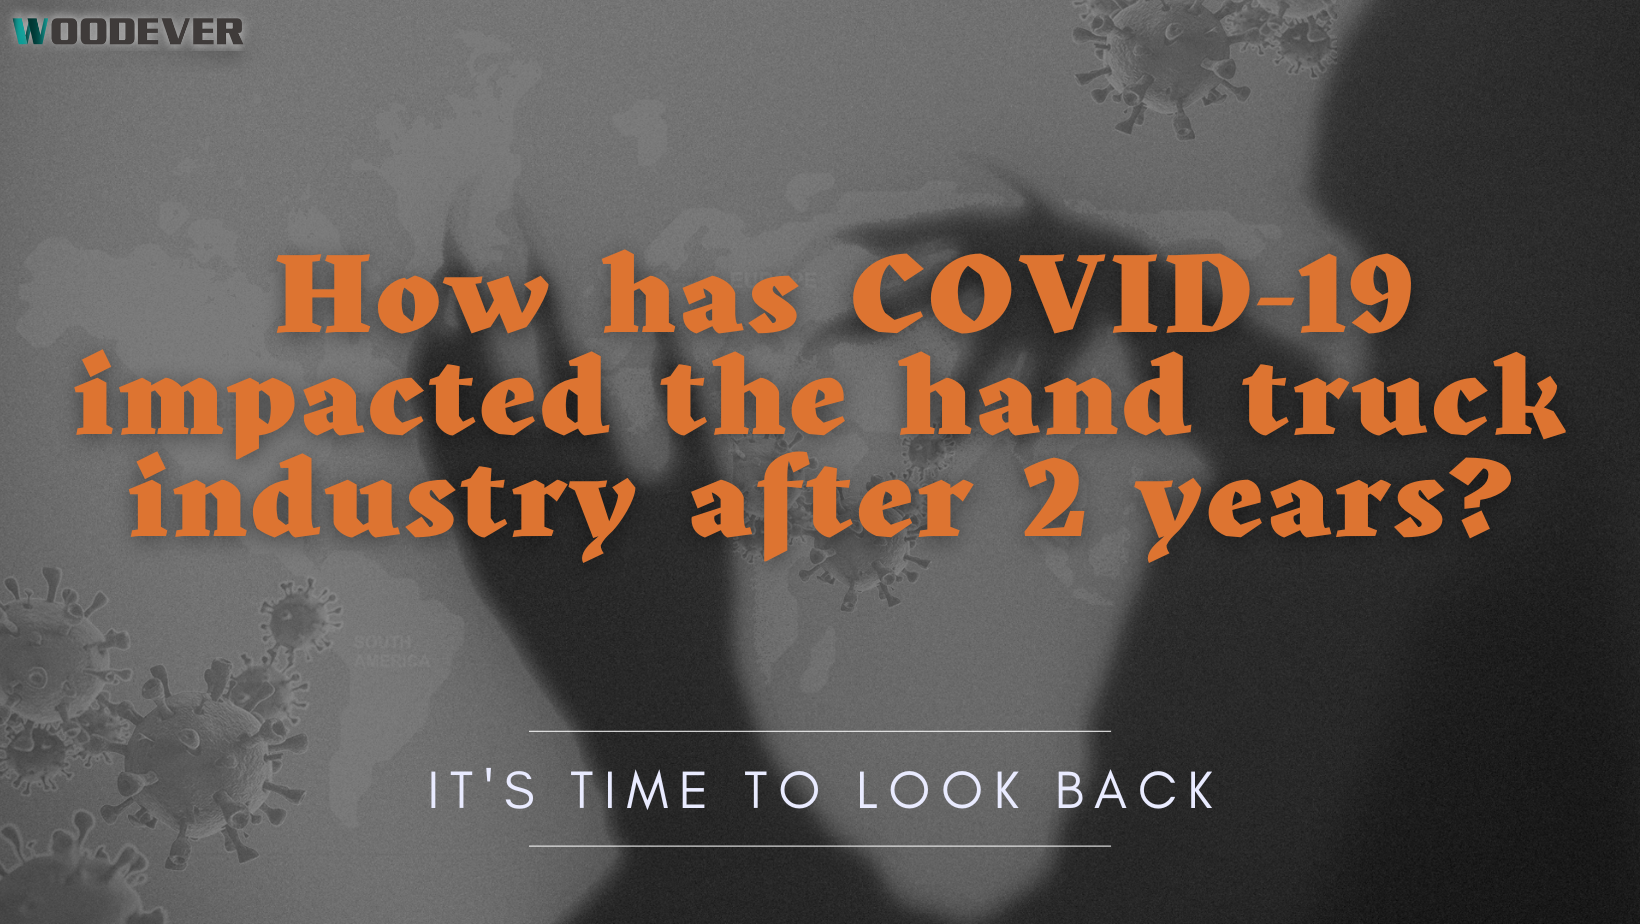 COVID-19 在兩個方面對手推車市場產生了影響。製造業需求下降。另一方面，在電子商務中得到廣泛採用的倉儲行業越來越受歡迎。在大流行期間，隨著人們在網上購買更多商品，電子商務顯著增長